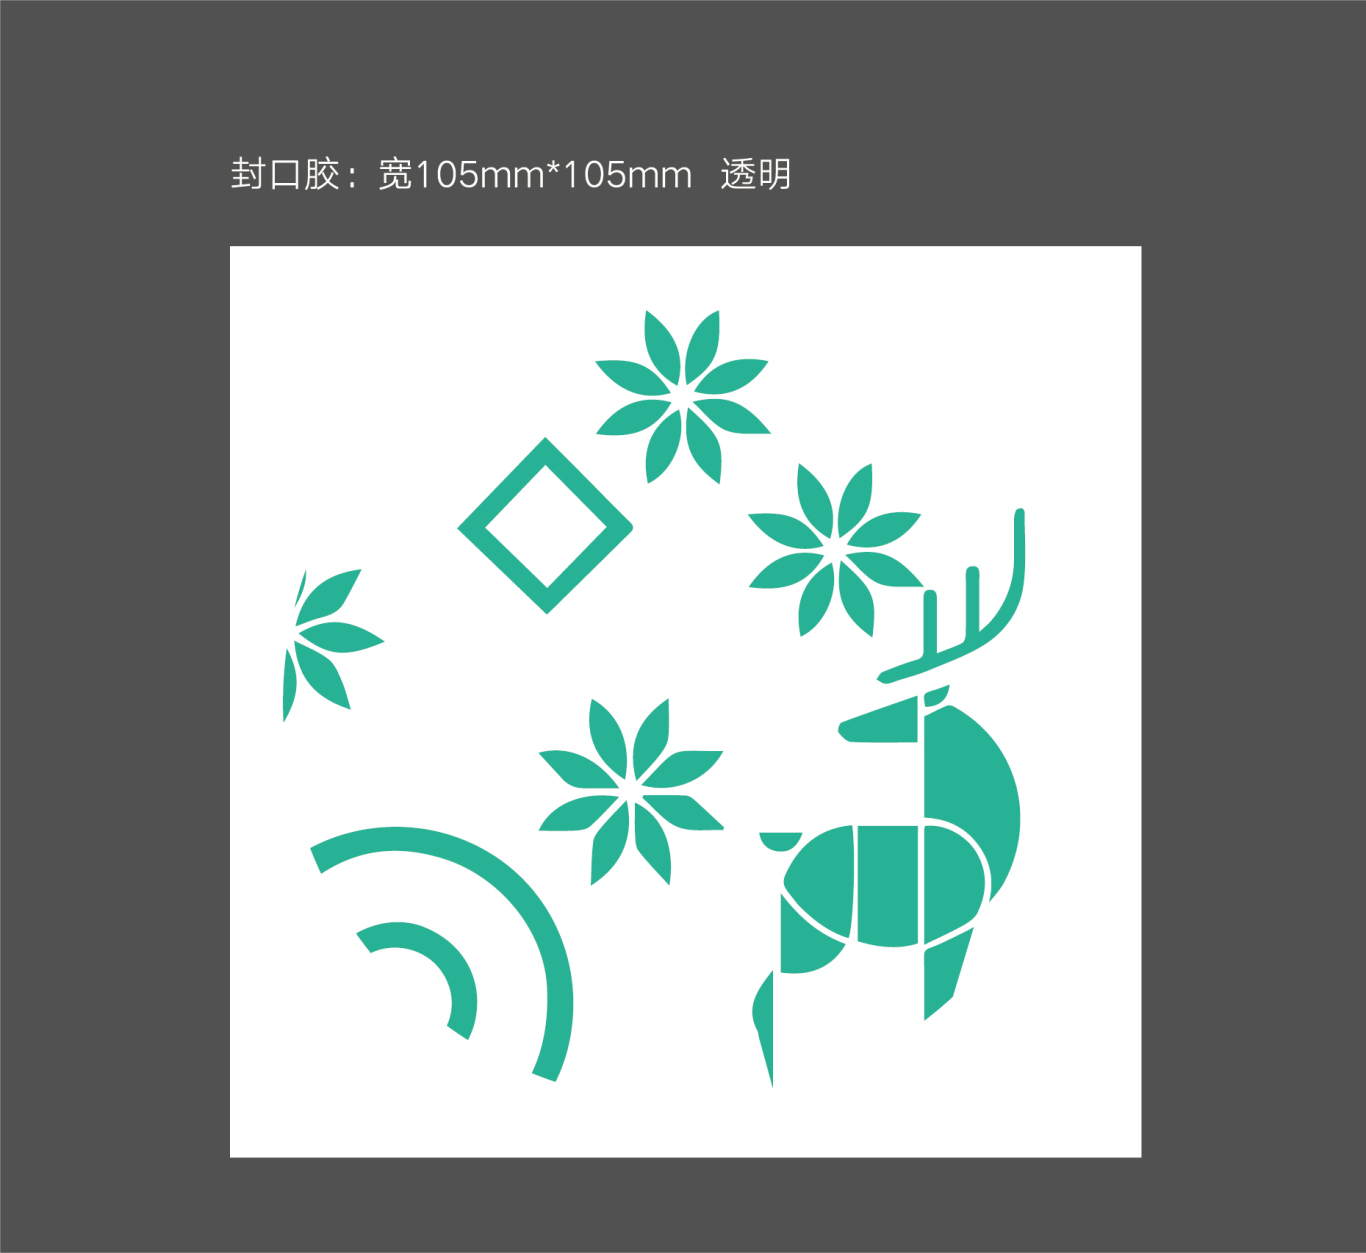 清舞飘雪茶饮 logo设计及吉祥物设计图15